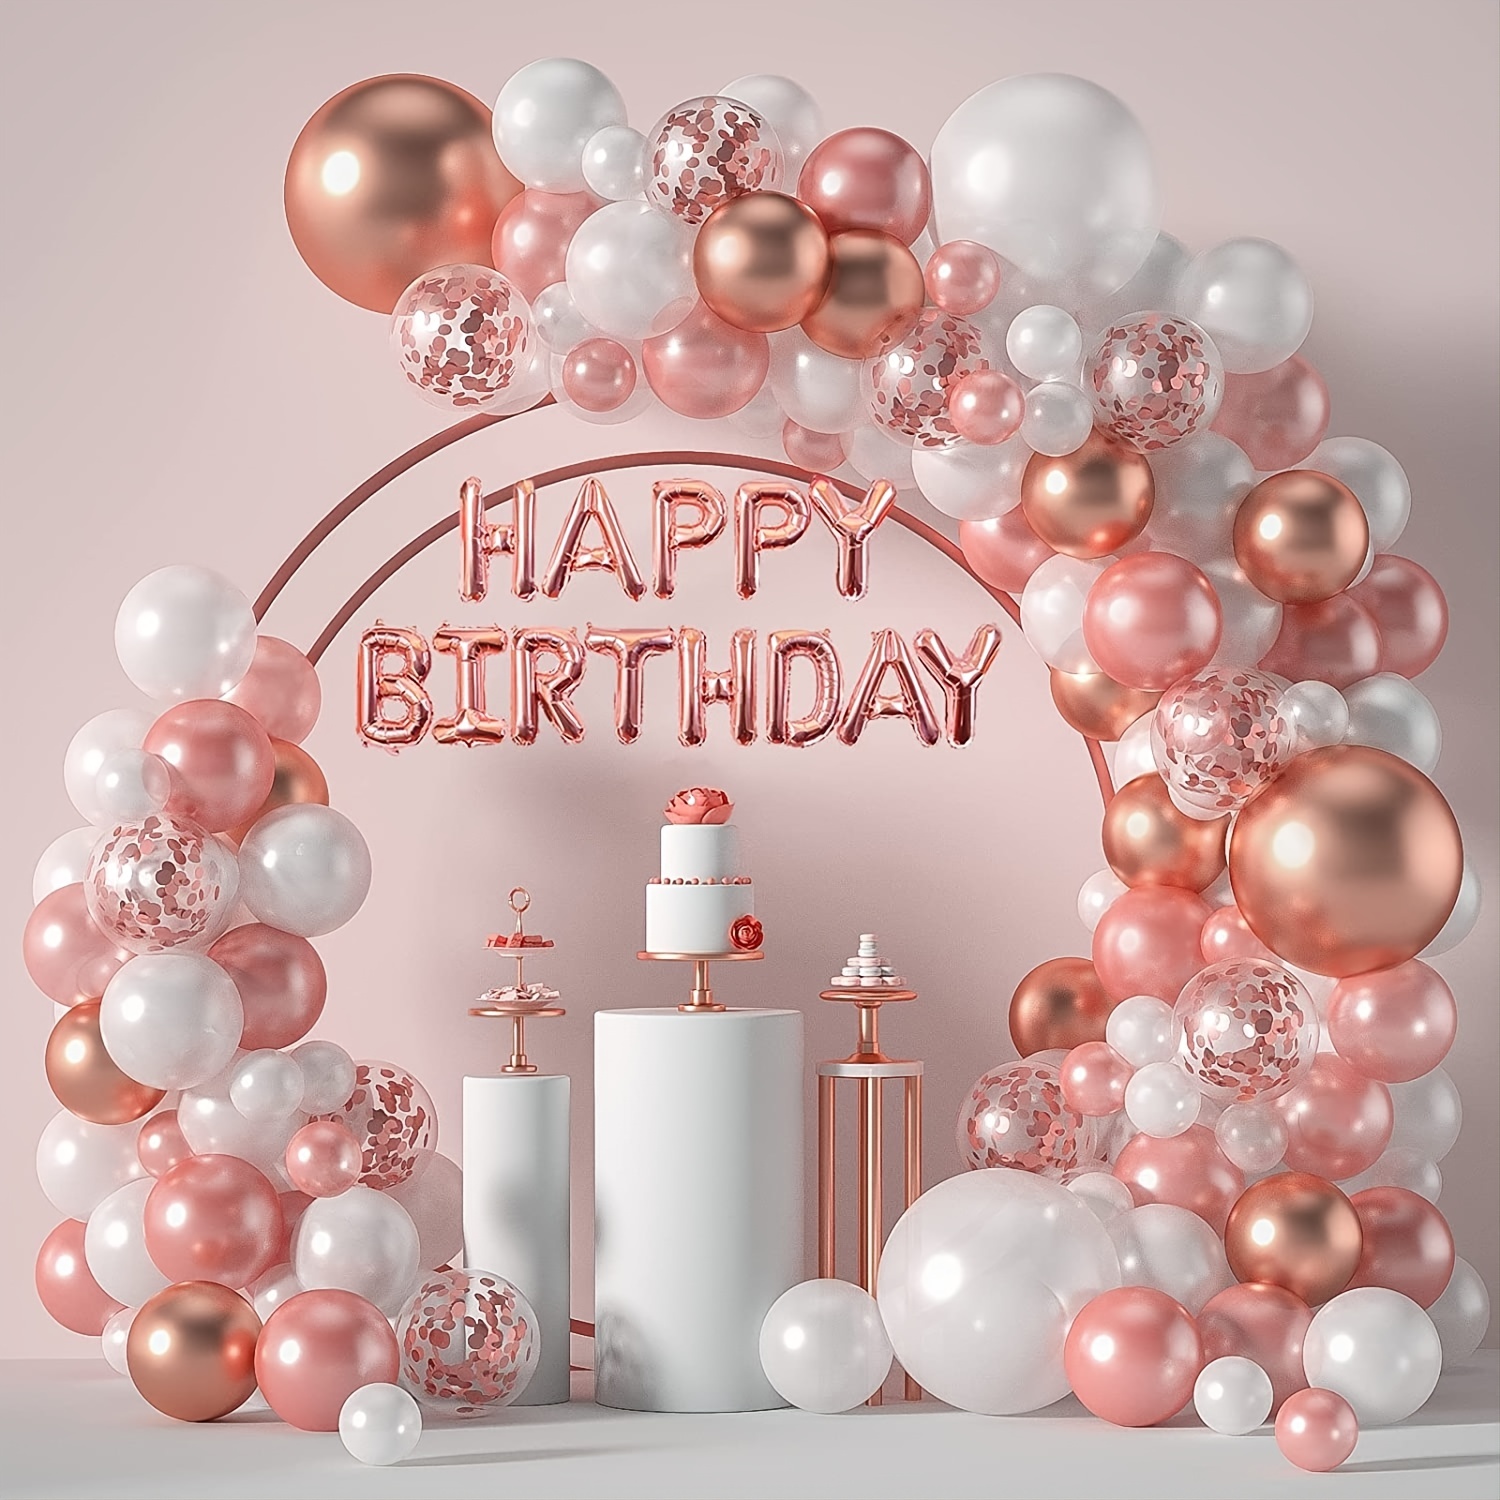 Kit de arco de guirnalda de globos rosados, 122 globos de color rosa  intenso y dorado de diferentes tamaños para cumpleaños con temática de  princesa